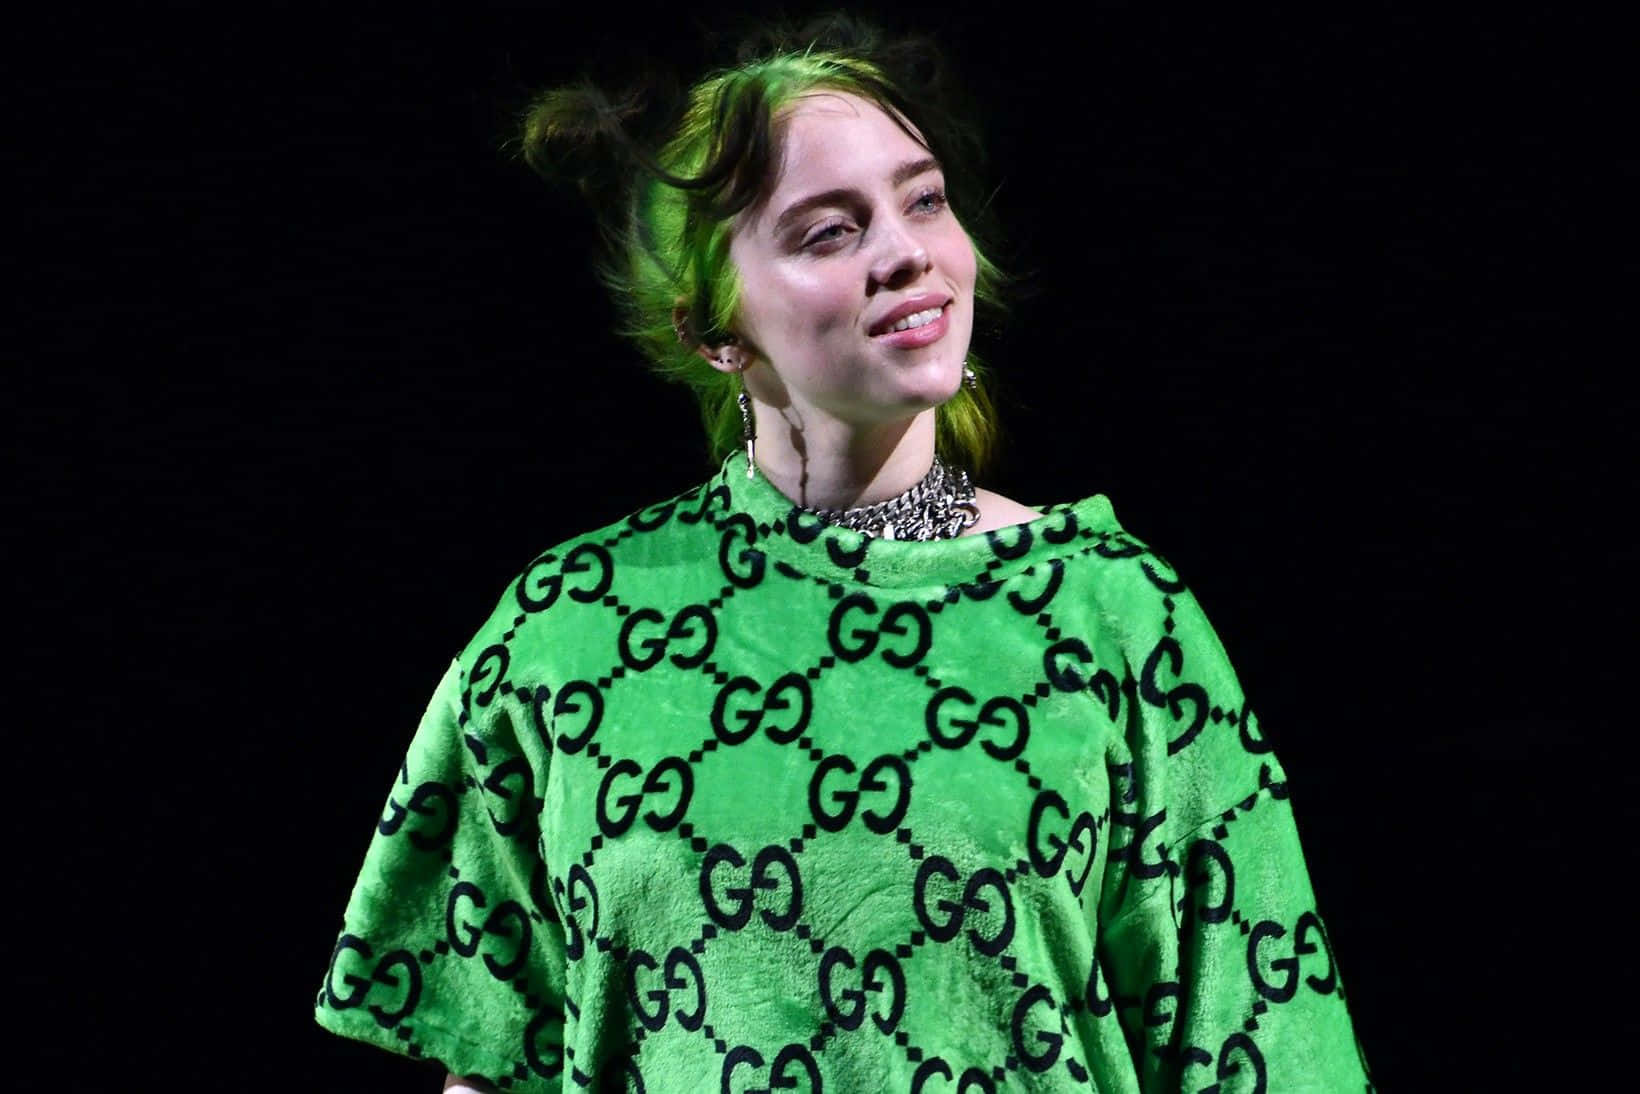 Einefrau In Einem Grünen Shirt Lächelt. Wallpaper